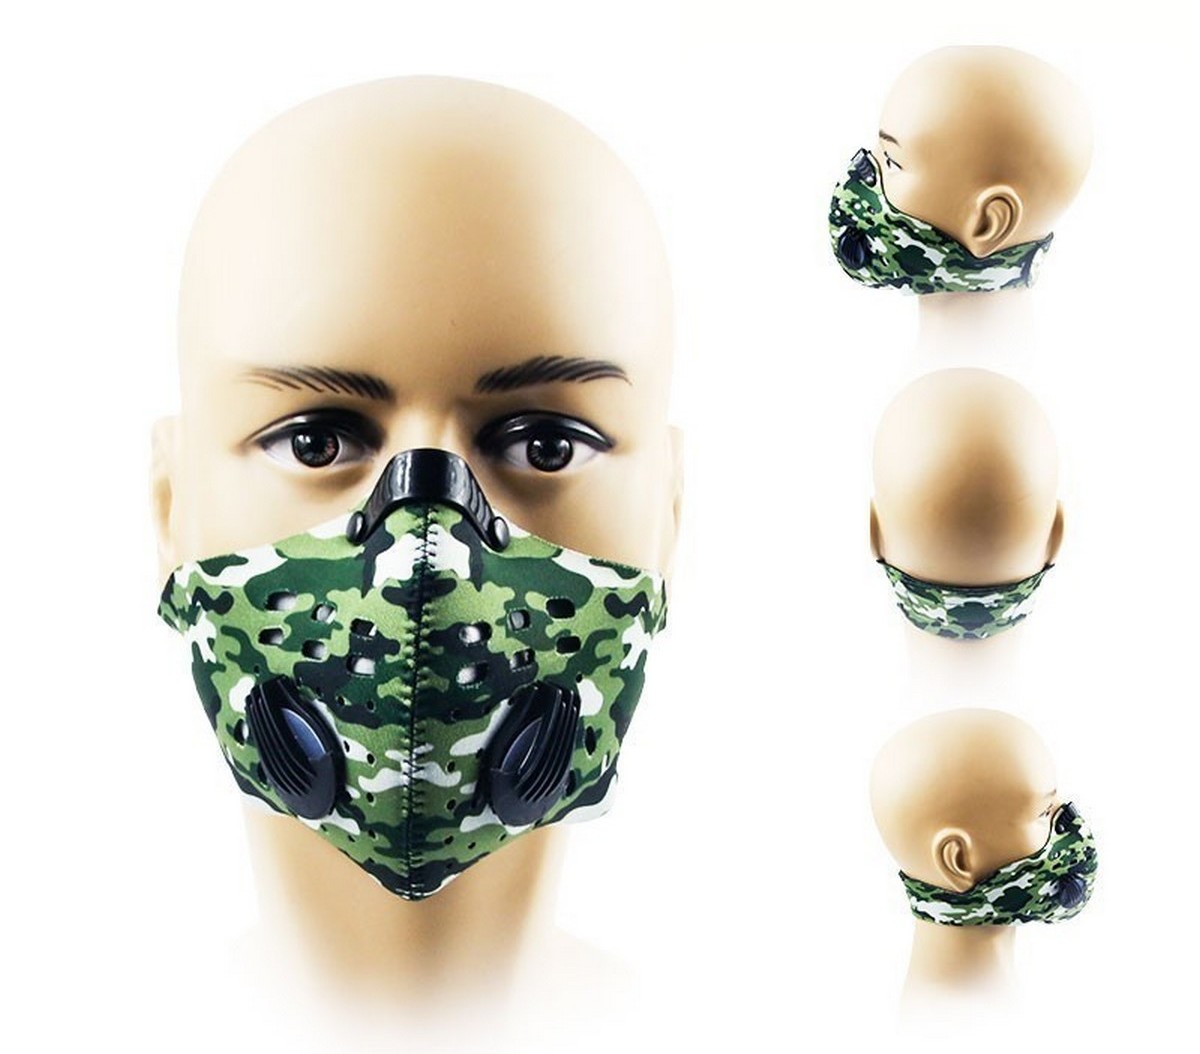 légzésvédő maszk